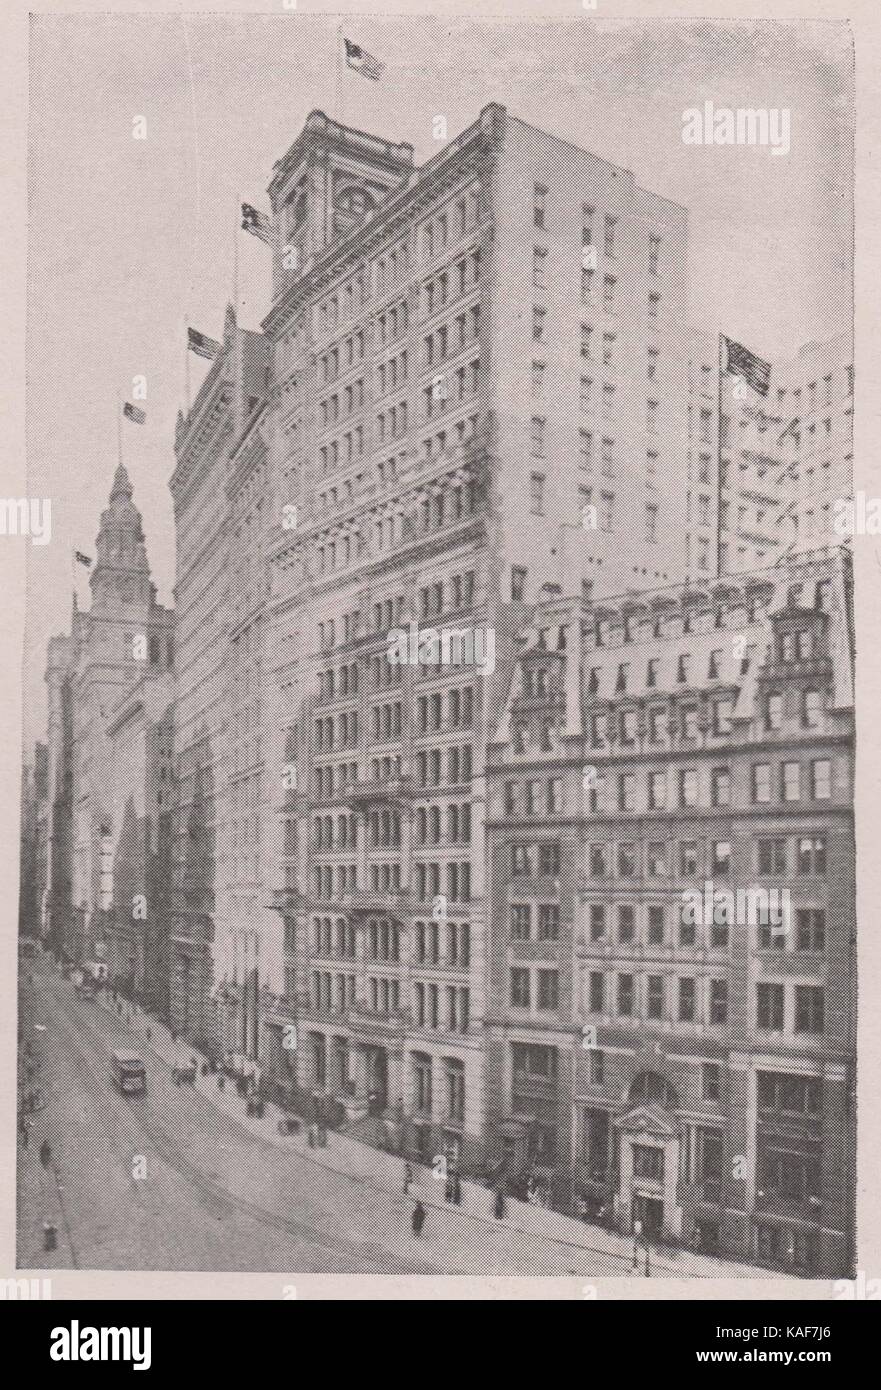 La Standard Oil, un bâtiment de 15 étages, au 26 Broadway. Accueil de la grande société dont il porte le nom Banque D'Images